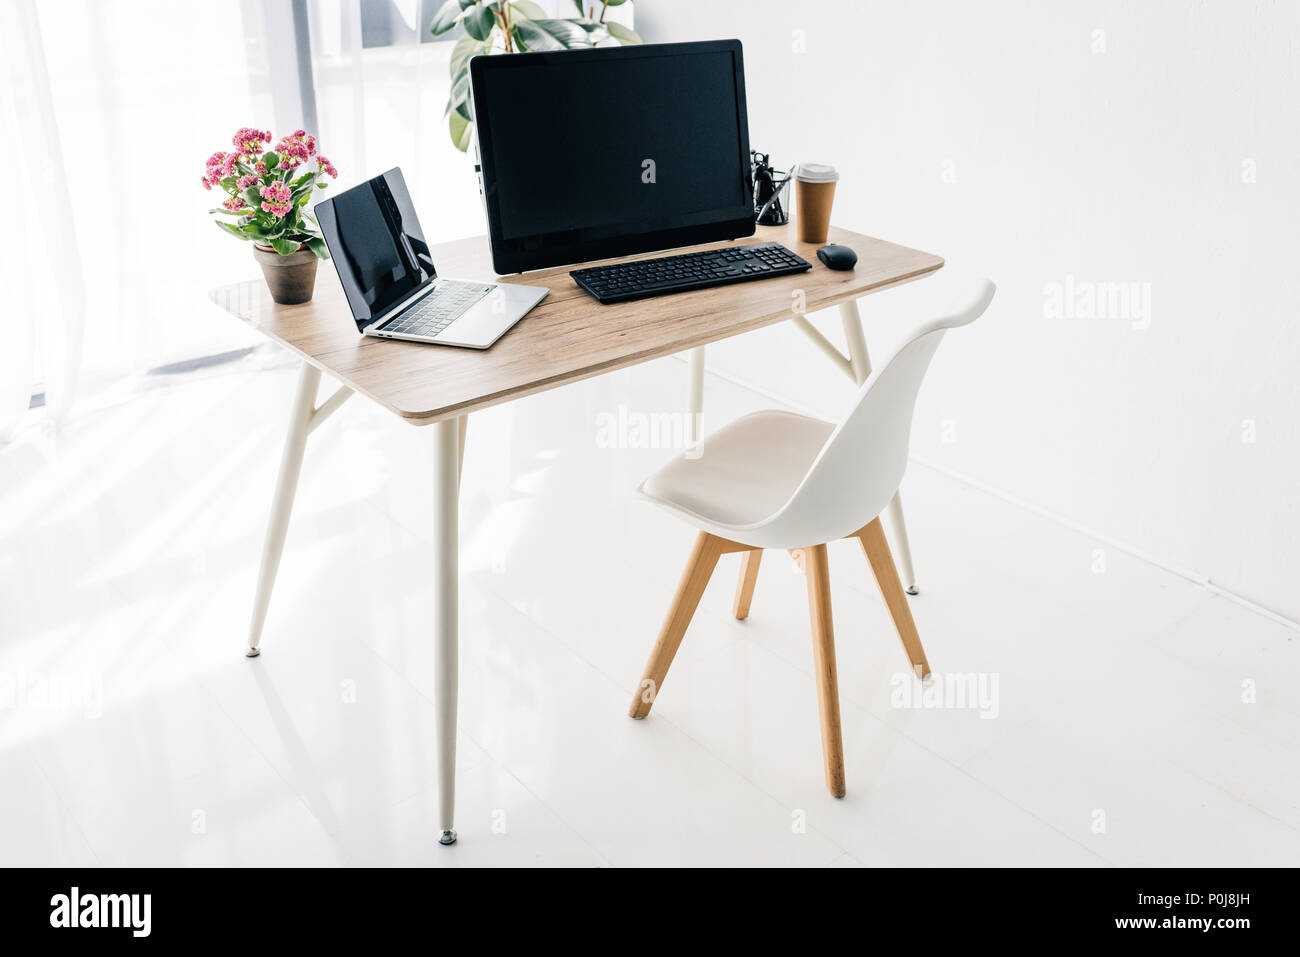 Intérieur de travail avec chaise, fleurs, café, papeterie, ordinateur portable et ordinateur sur table en bois Banque D'Images